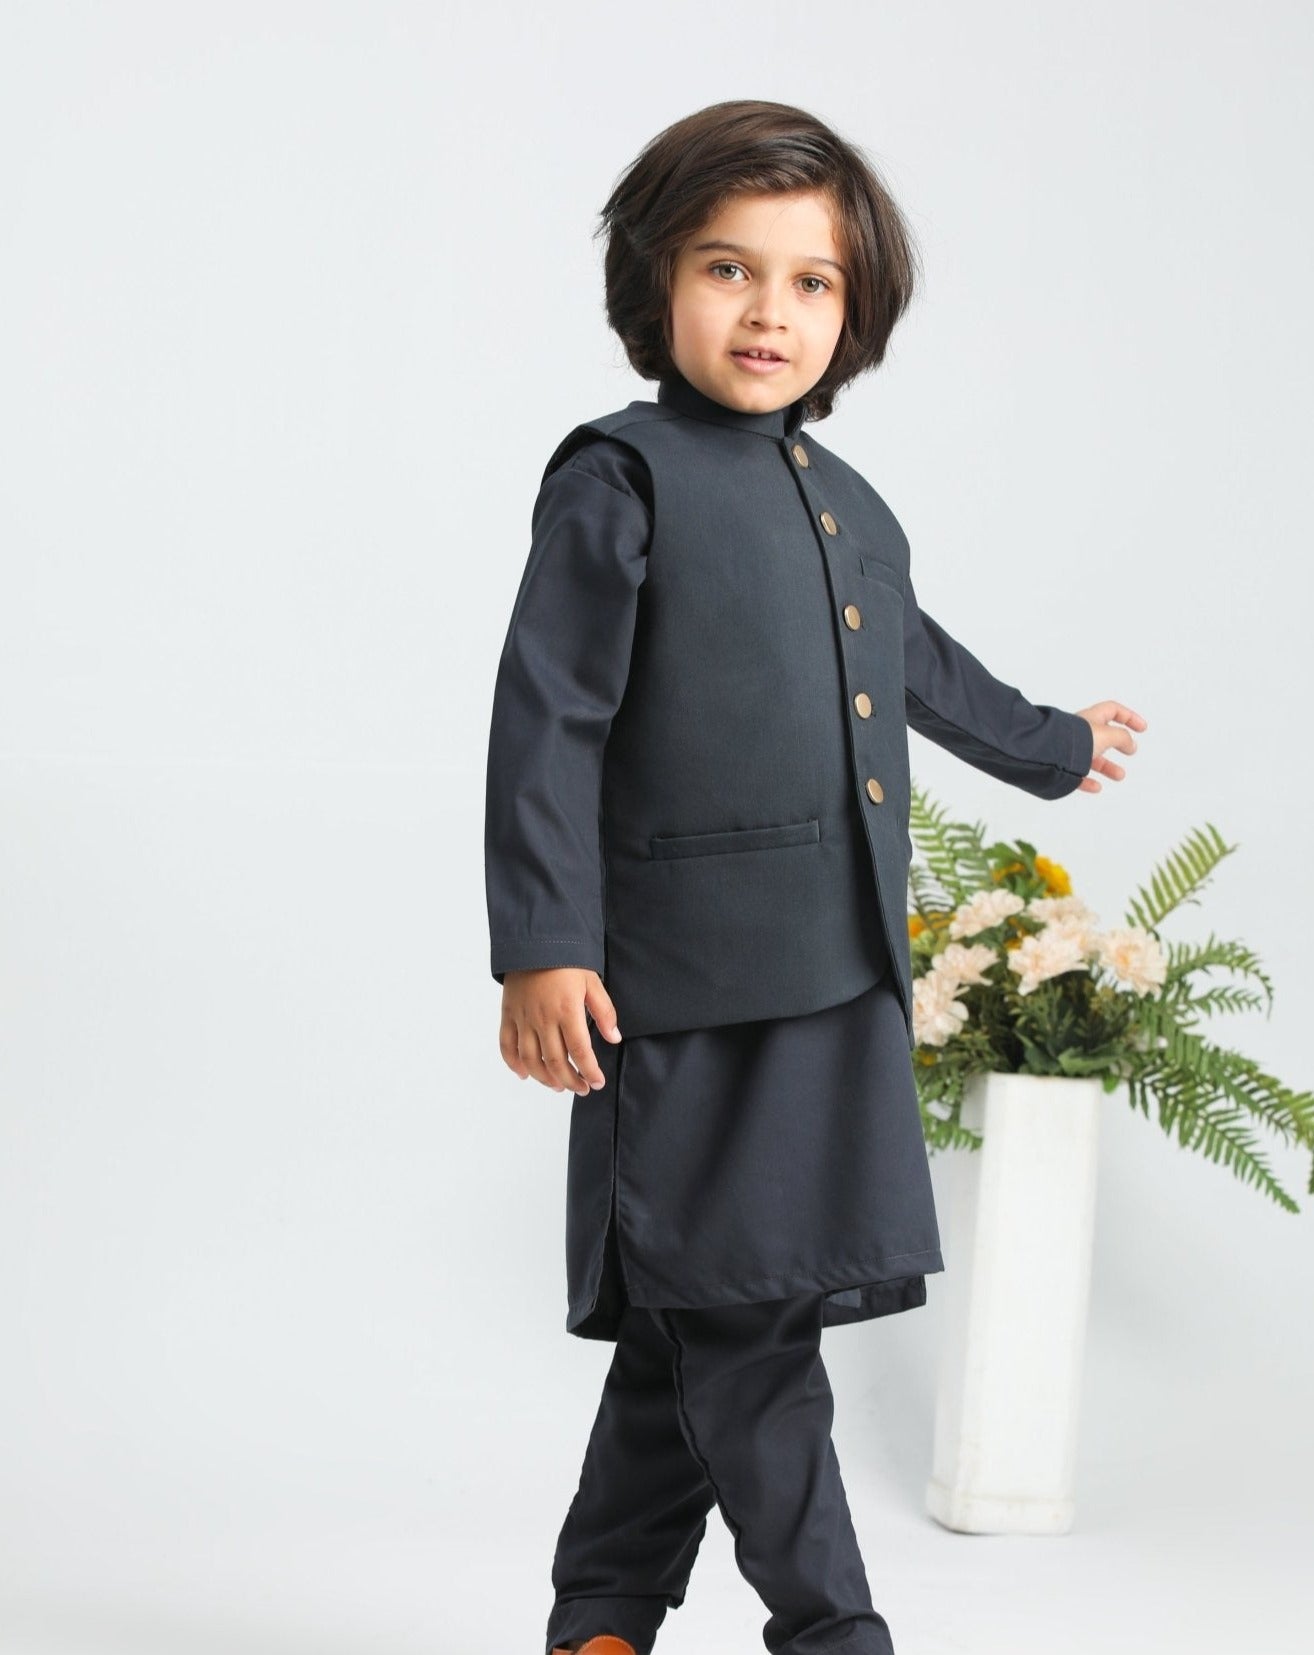 Charcoal Grey Shalwar Kameez and Waistcoat - 3PC - Kids